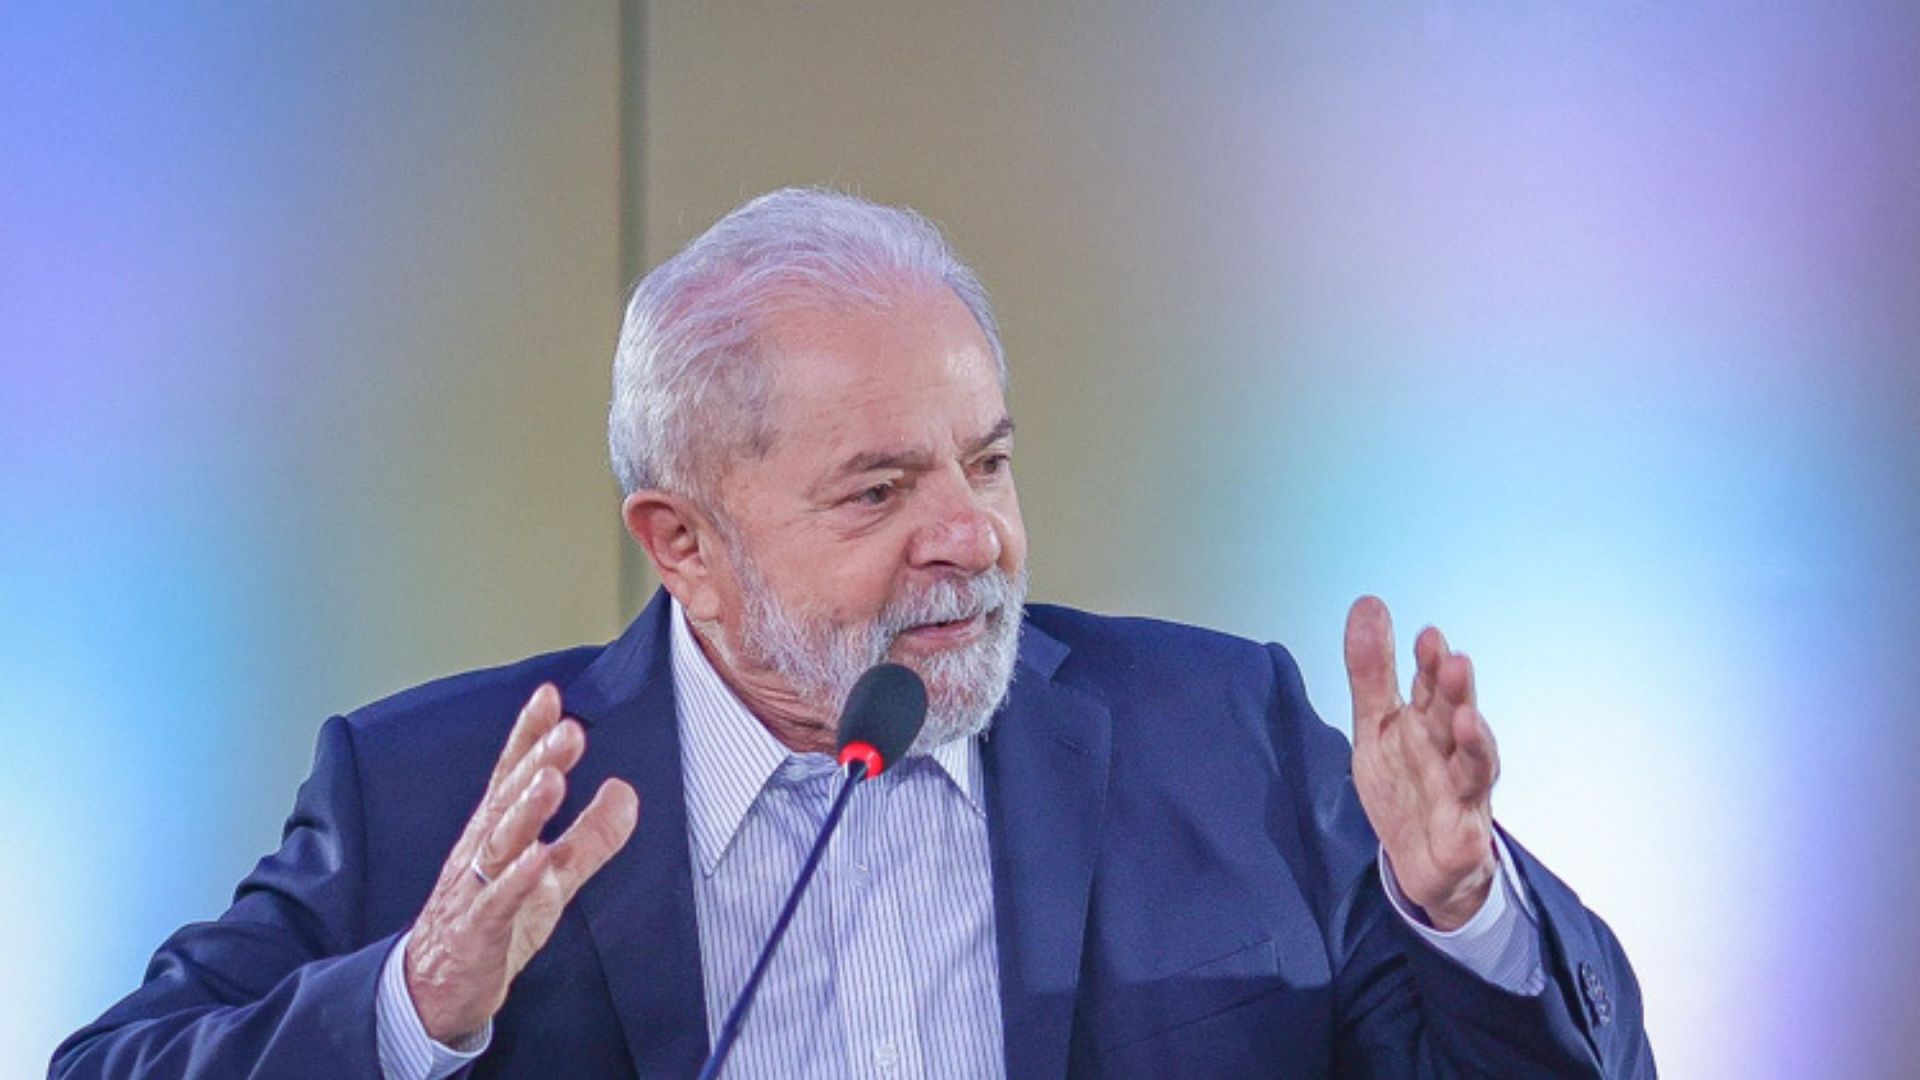 Foto de Lula com as mãos na altura dos ombros falando em um púlpito. Ele usa terno azul marinho, cabelos e barba brancas.